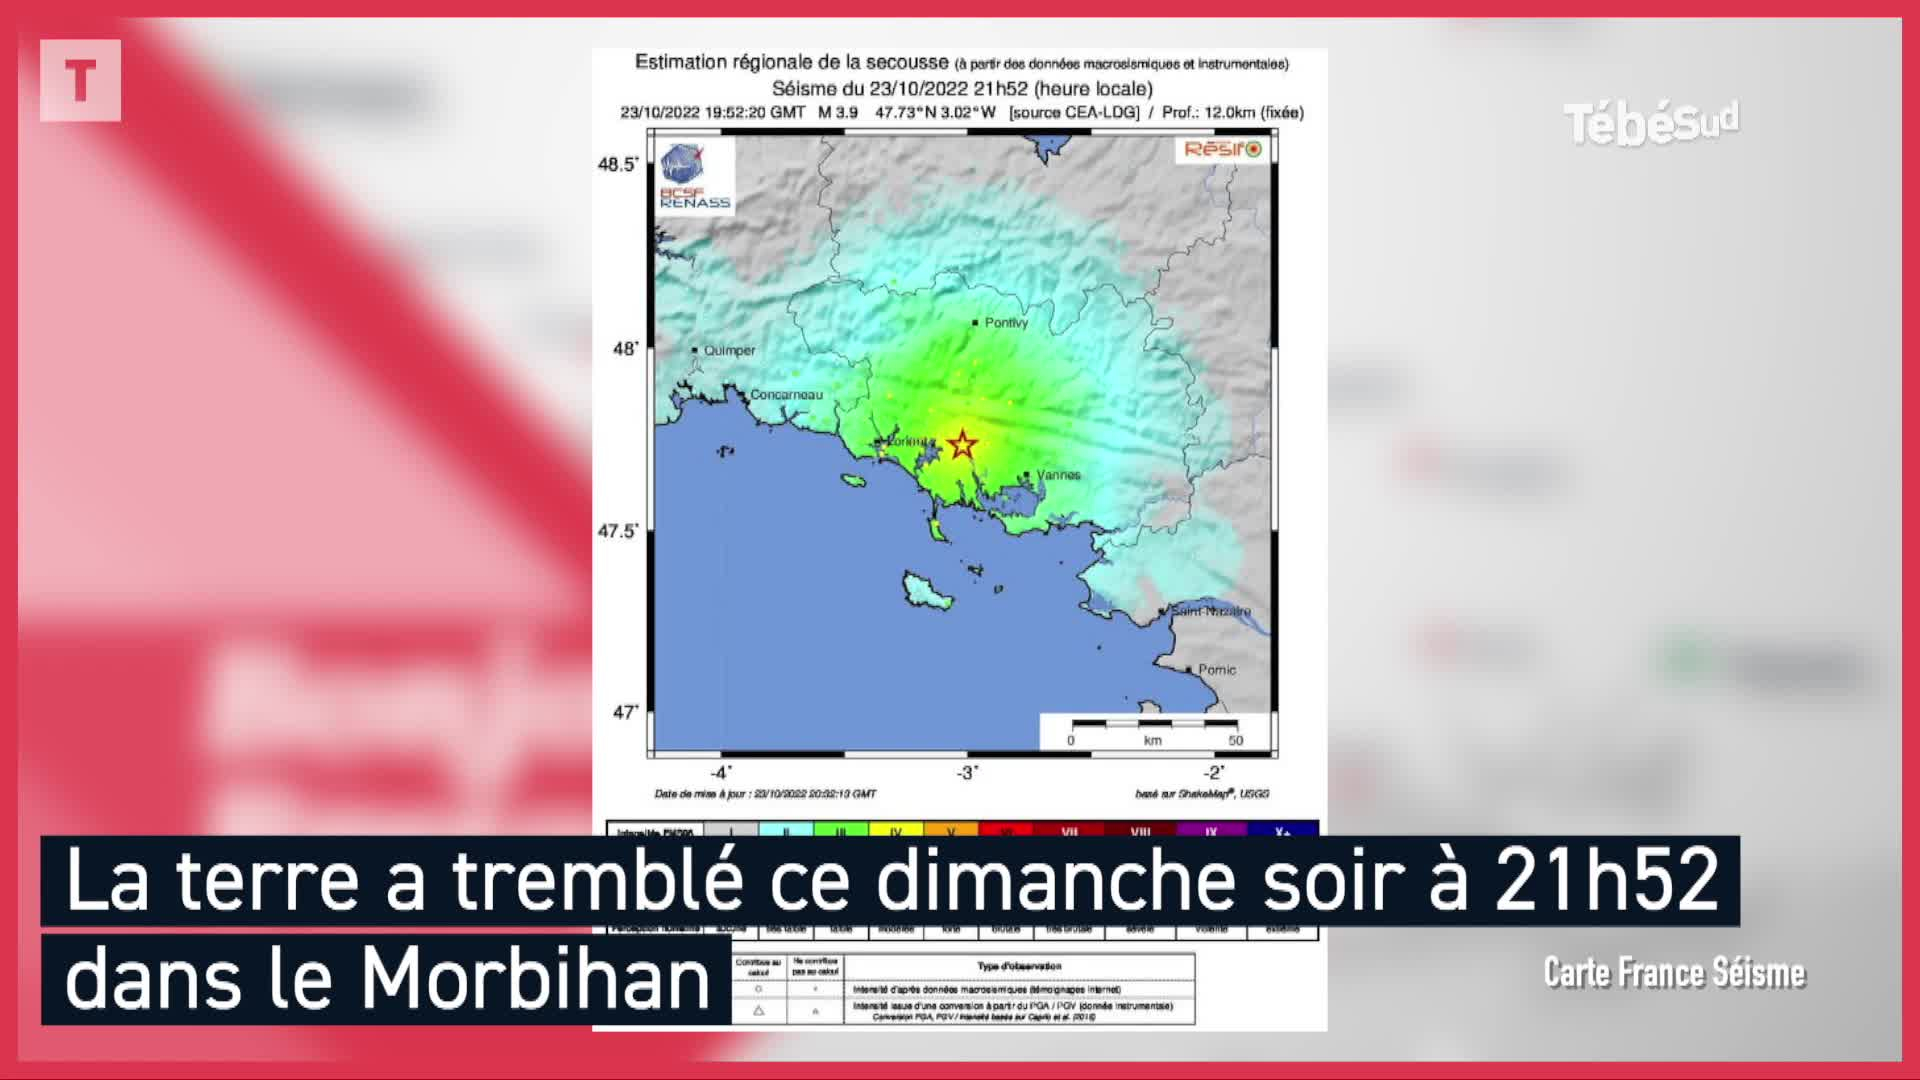 Petit séisme mais belle frayeur dans le Morbihan (Le Télégramme)